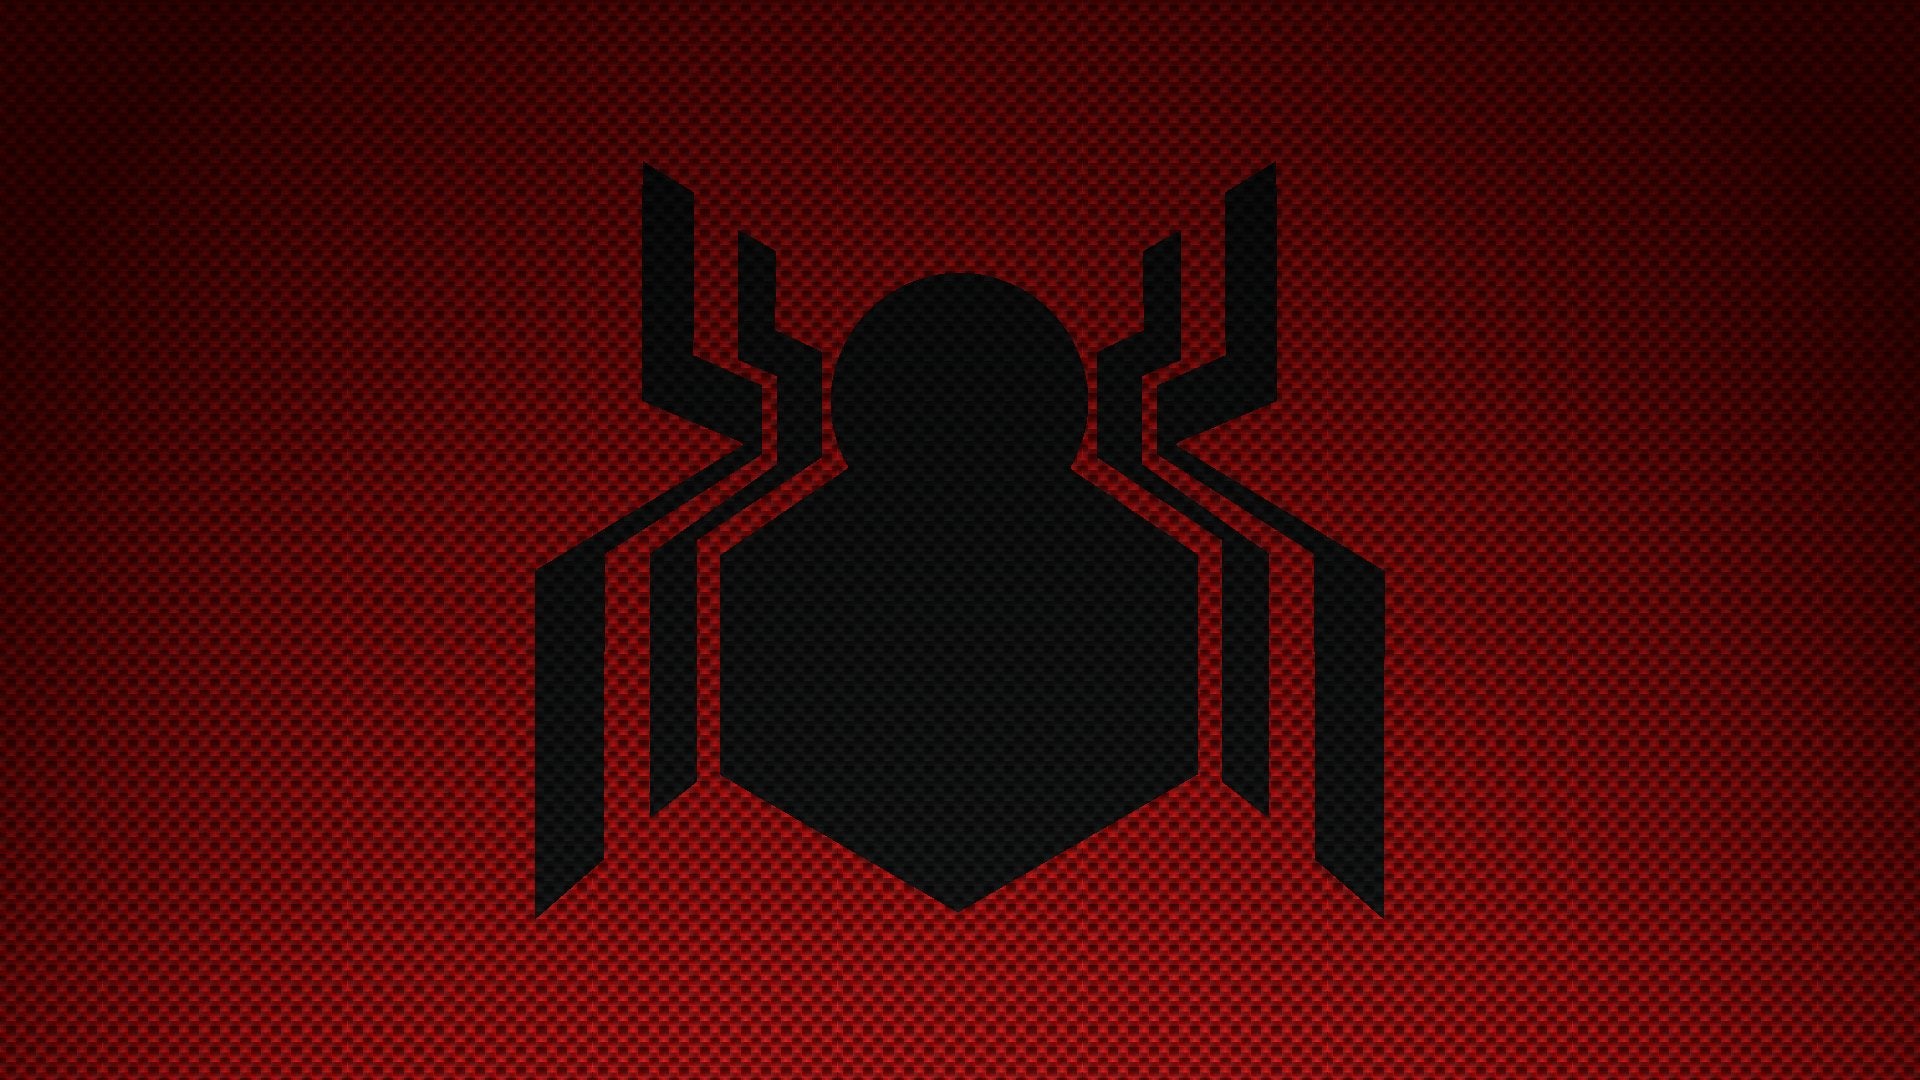 spiderman symbol wallpaper,rot,schwarz,text,schriftart,grafikdesign